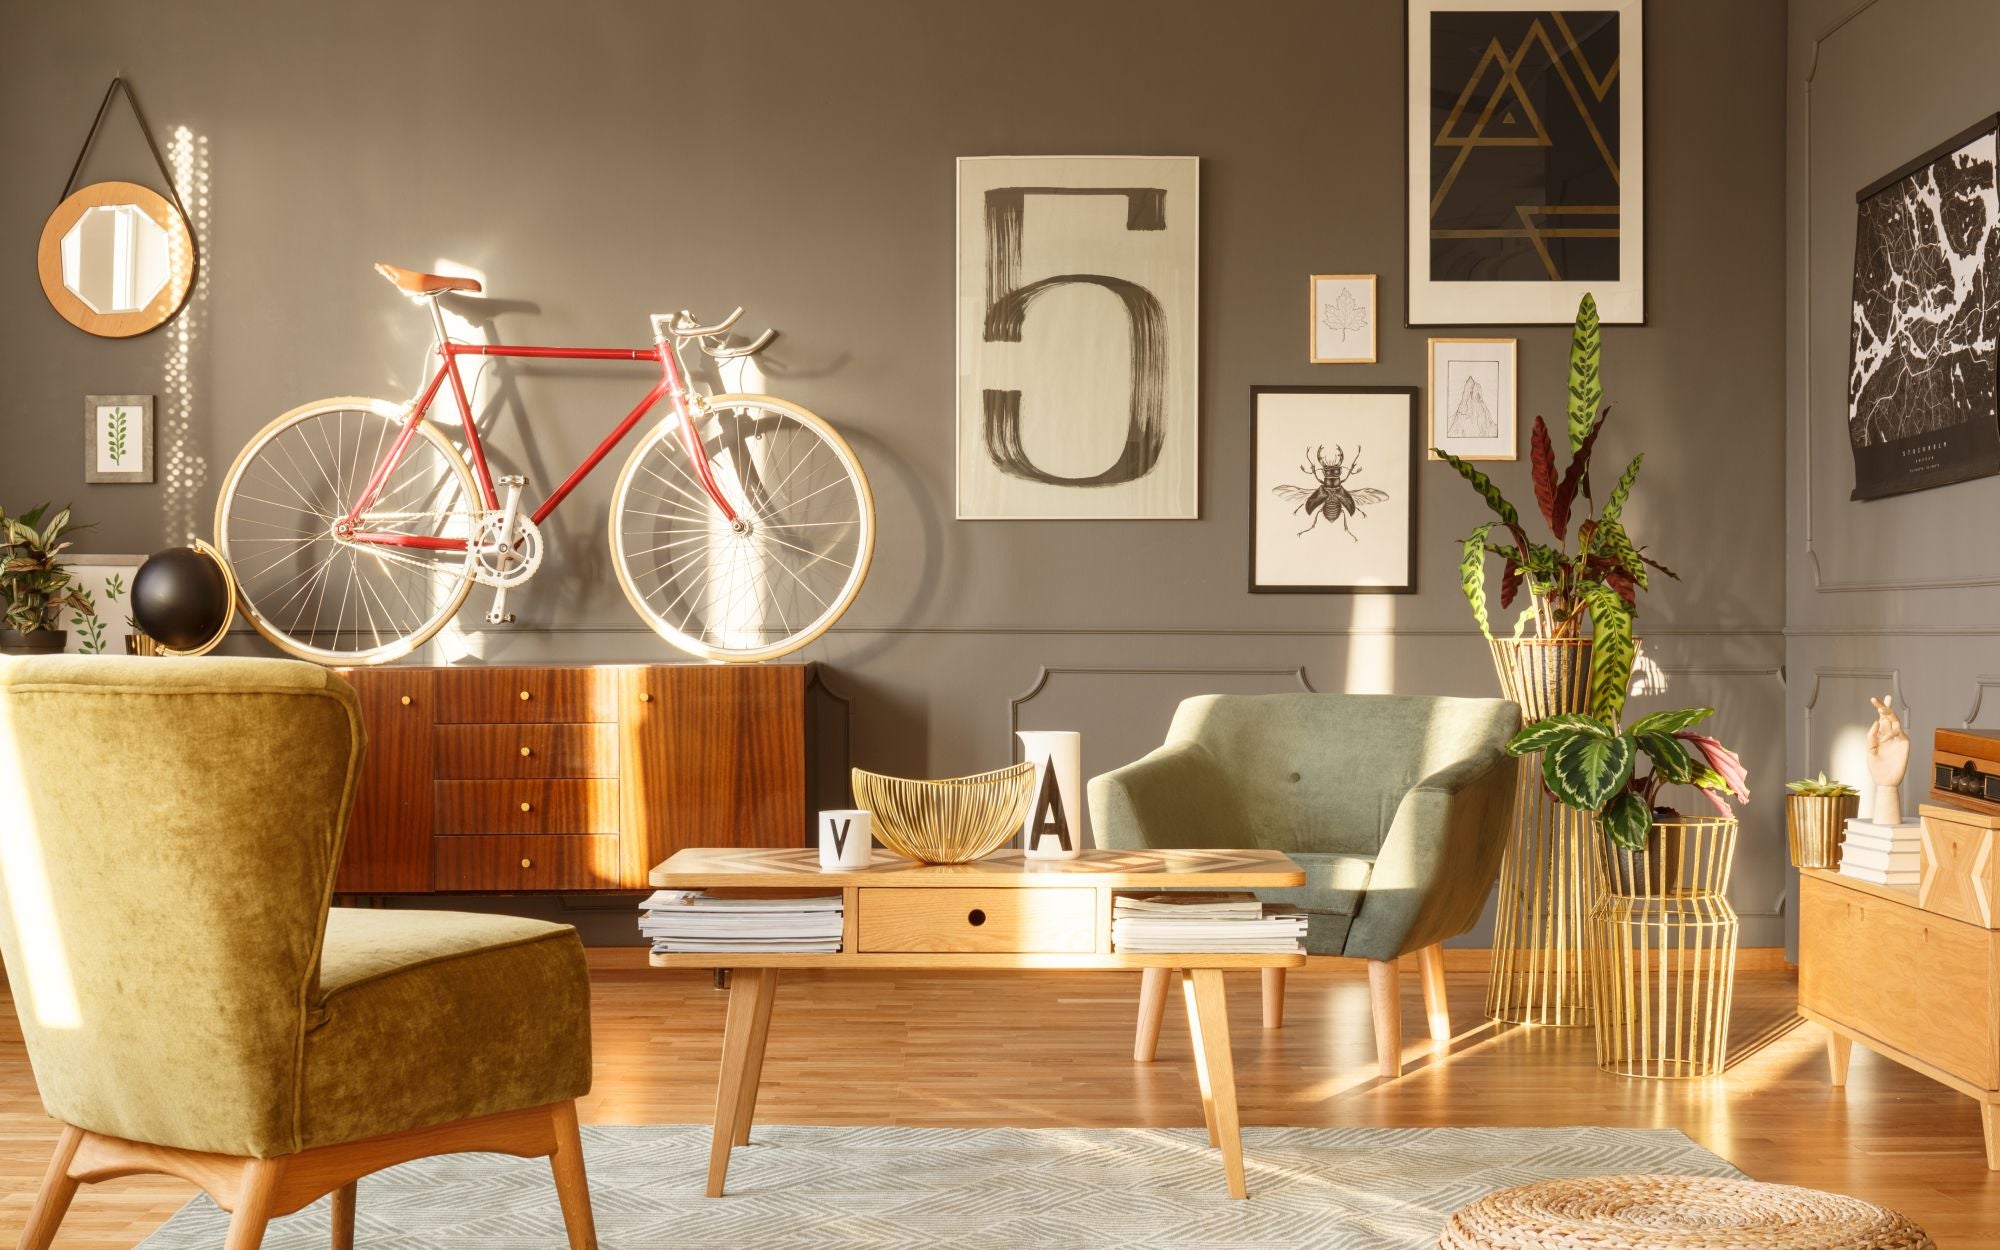 Salon retro z drewnianymi podłogami, komodą, vintage rowerem, oraz plakatami dekoracyjnymi